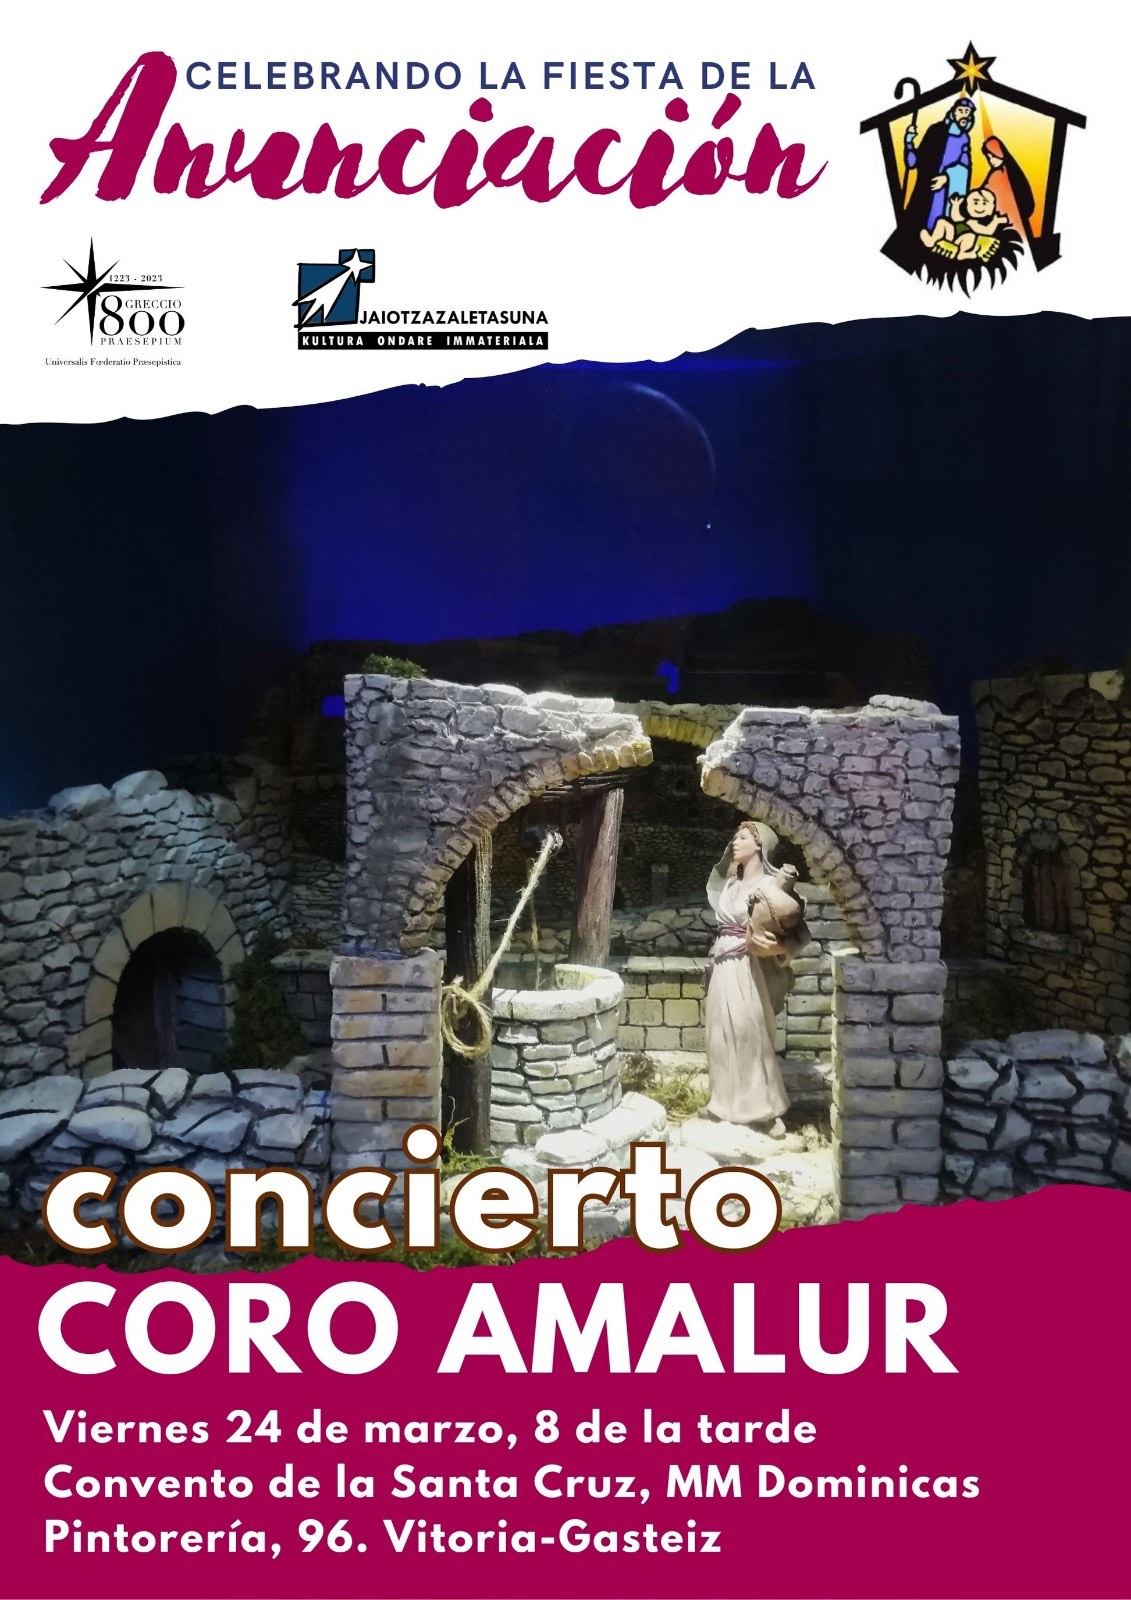 Coro Amalur celebra la Fiesta de la Anunciación con un concierto el viernes, 24 de marzo, en el convento de la Santa Cruz (Dominicas) de Vitoria-Gasteiz